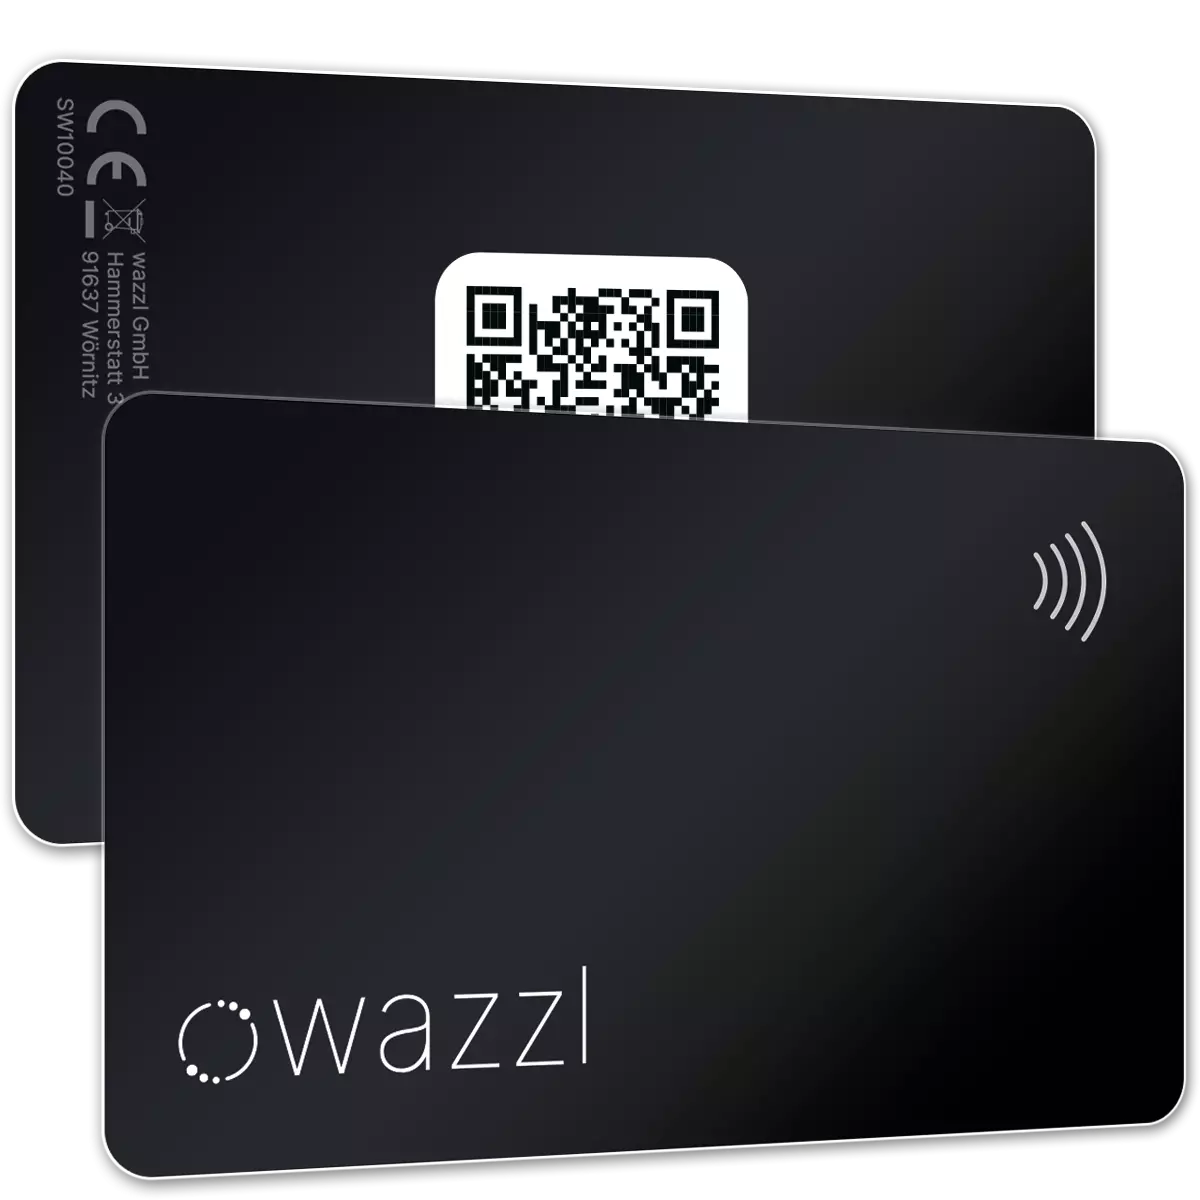 Smartcard nera - Biglietto da visita digitale con codice QR (profilo)